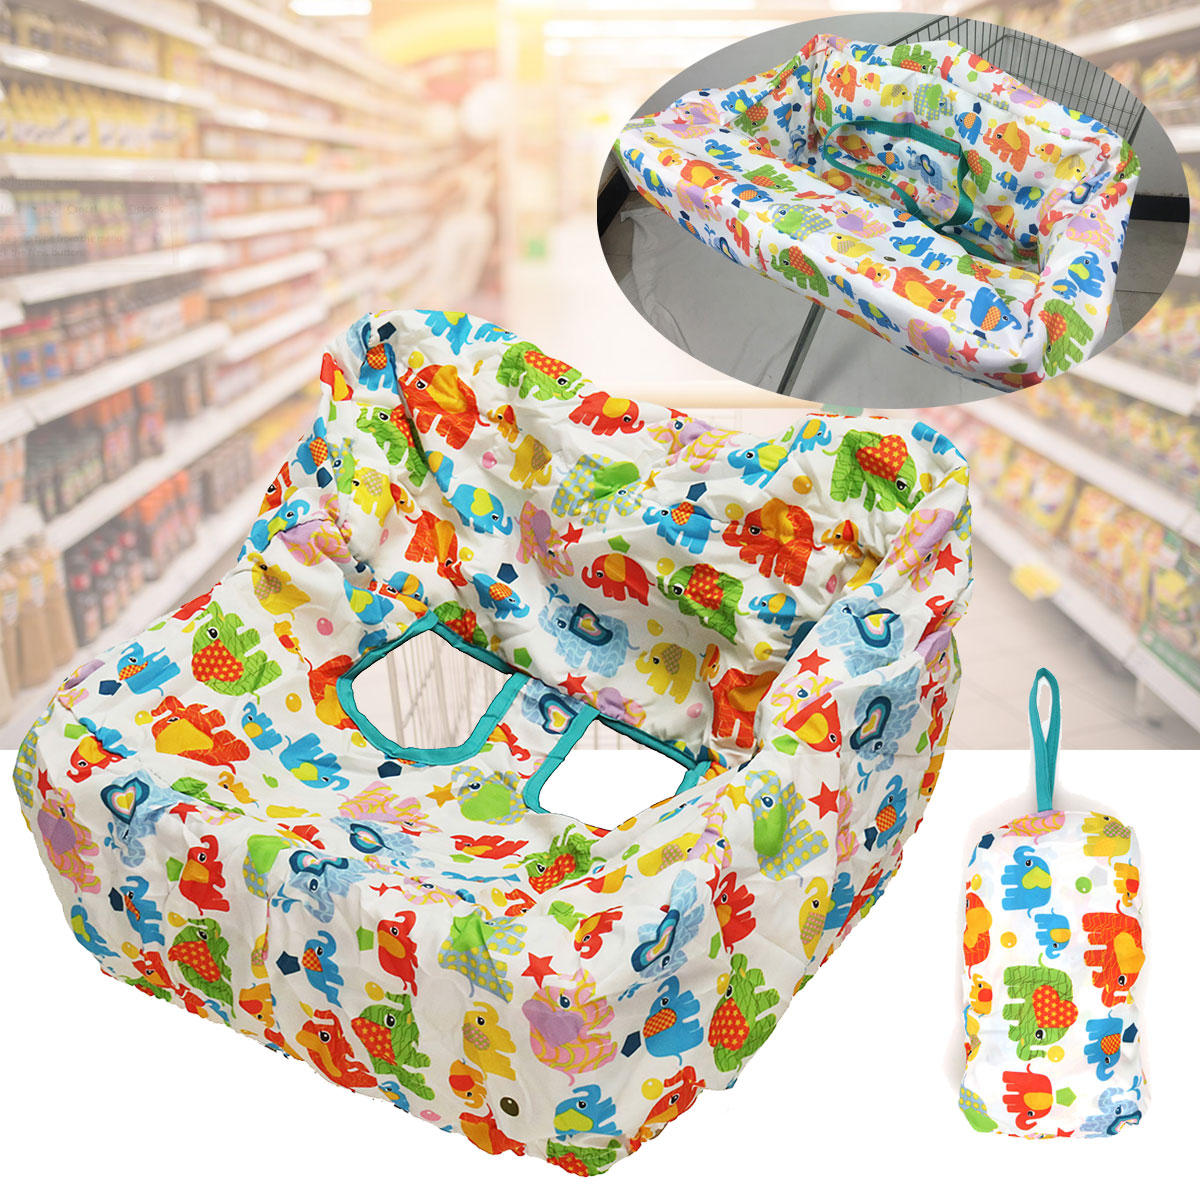 La silla del asiento del carro de la compra portátil del viaje del bebé geométrico cubre la estera protectora